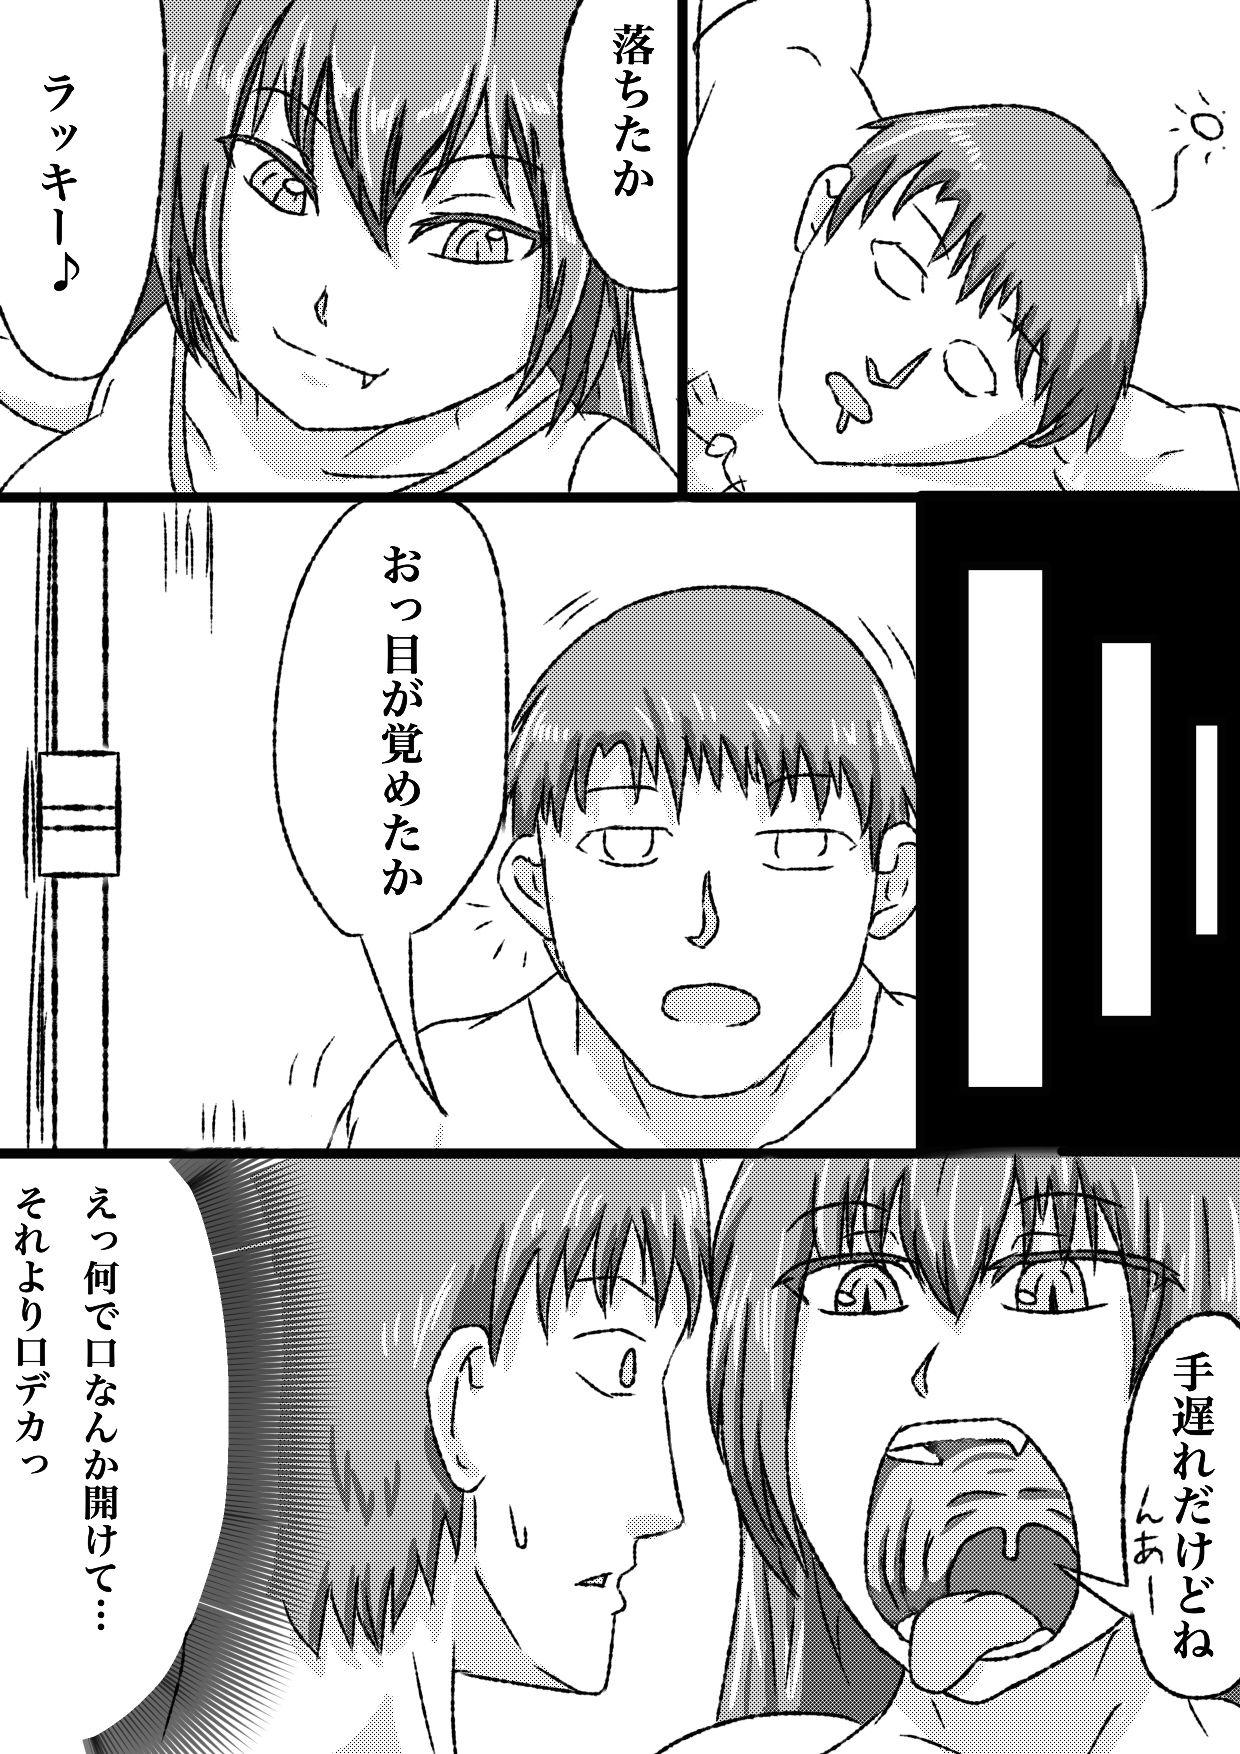 Fuck Com uchi no ko marunomi manga - Original Solo - Page 4